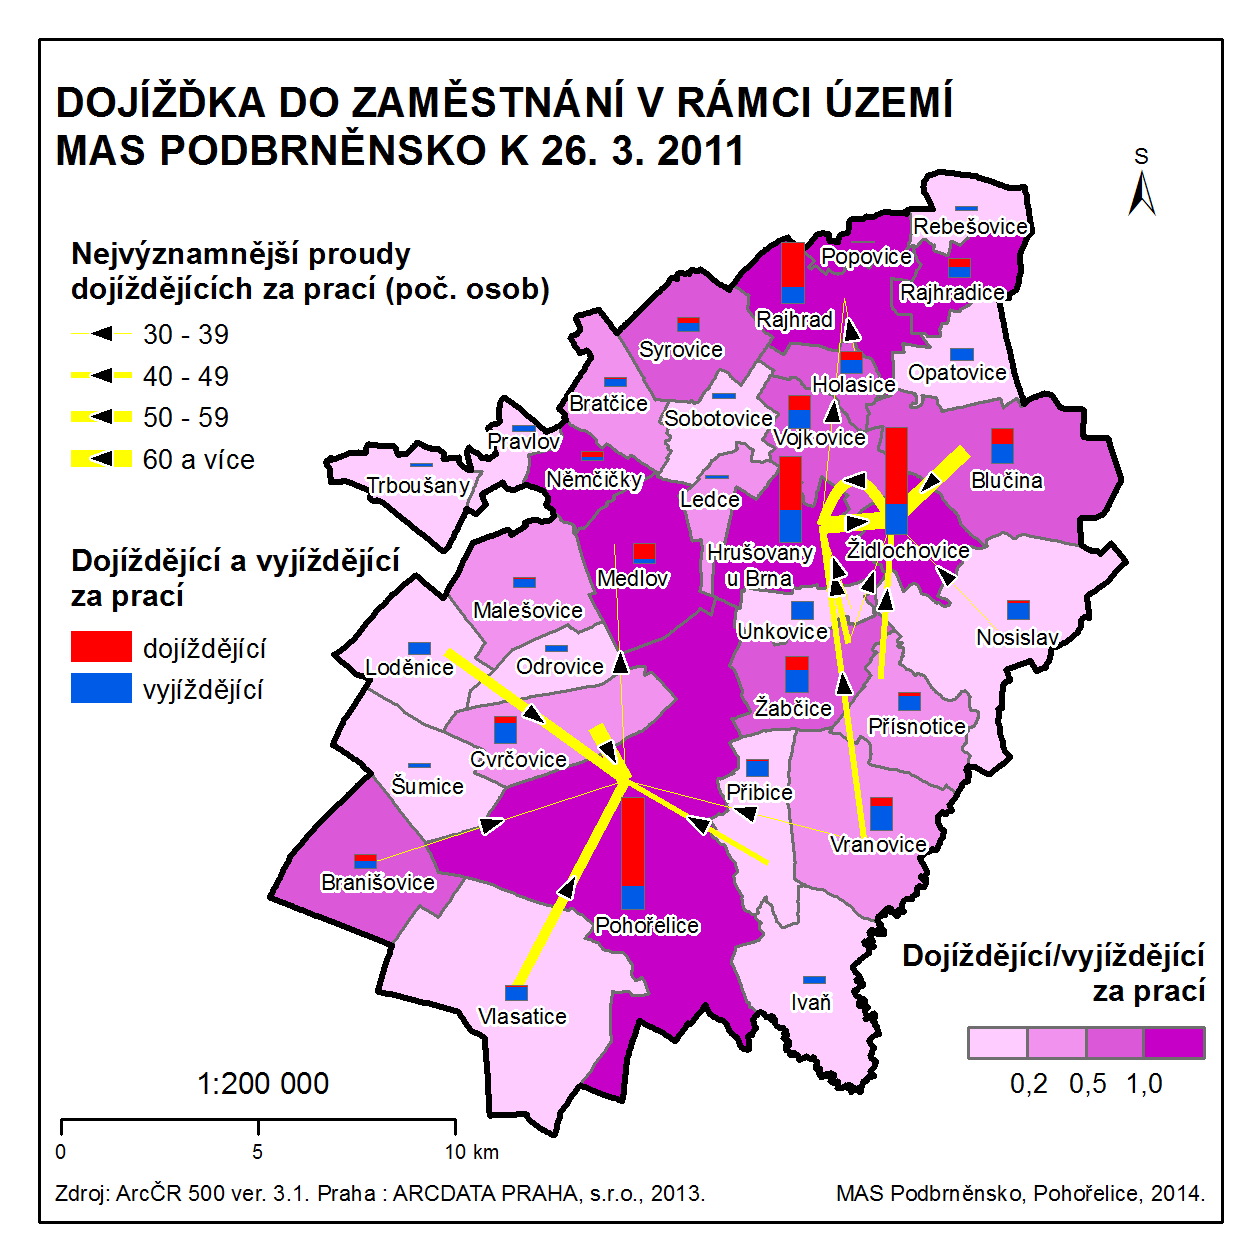 MAS (Popovice, Rajhrad, Vojkovice, Hrušovany u Brna, Žabčice a Vranovice) jsou mezi obcemi s celkovou dojížďkou o síle 100 osob a více zastoupeny všechny vyjma Popovic. Obr.